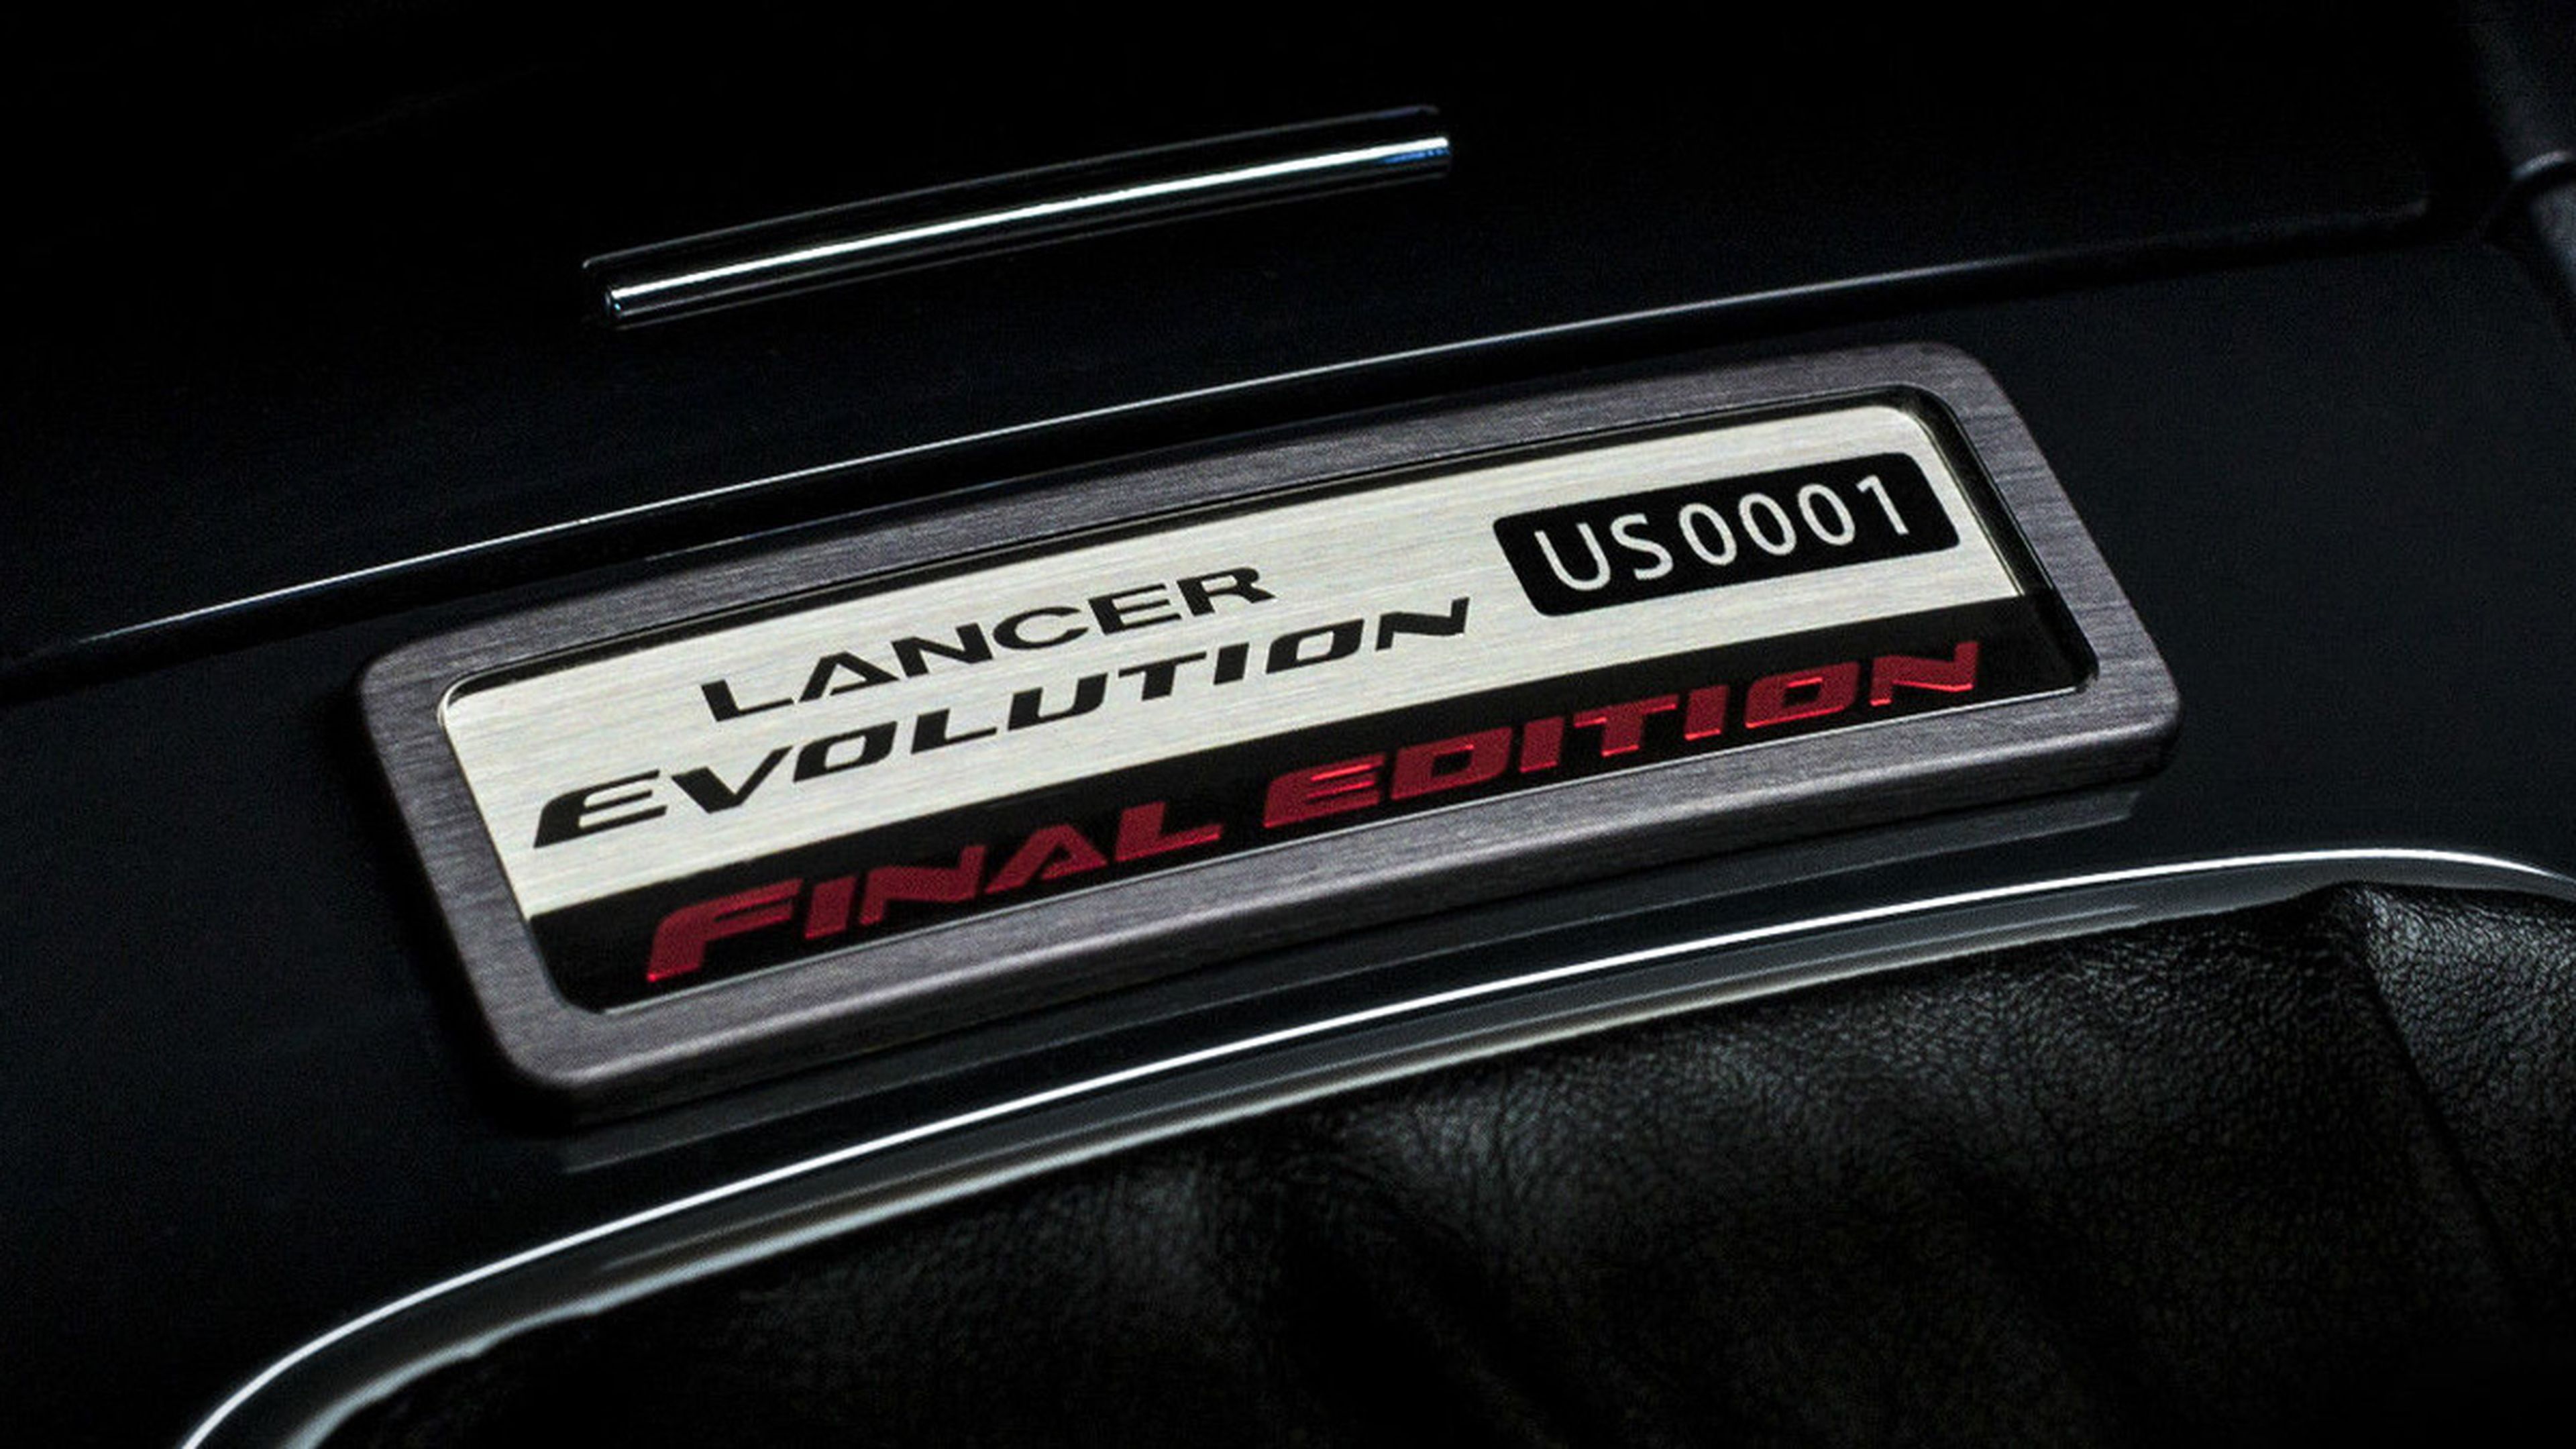 Mitsubishi Lancer Evo Final Edition placa